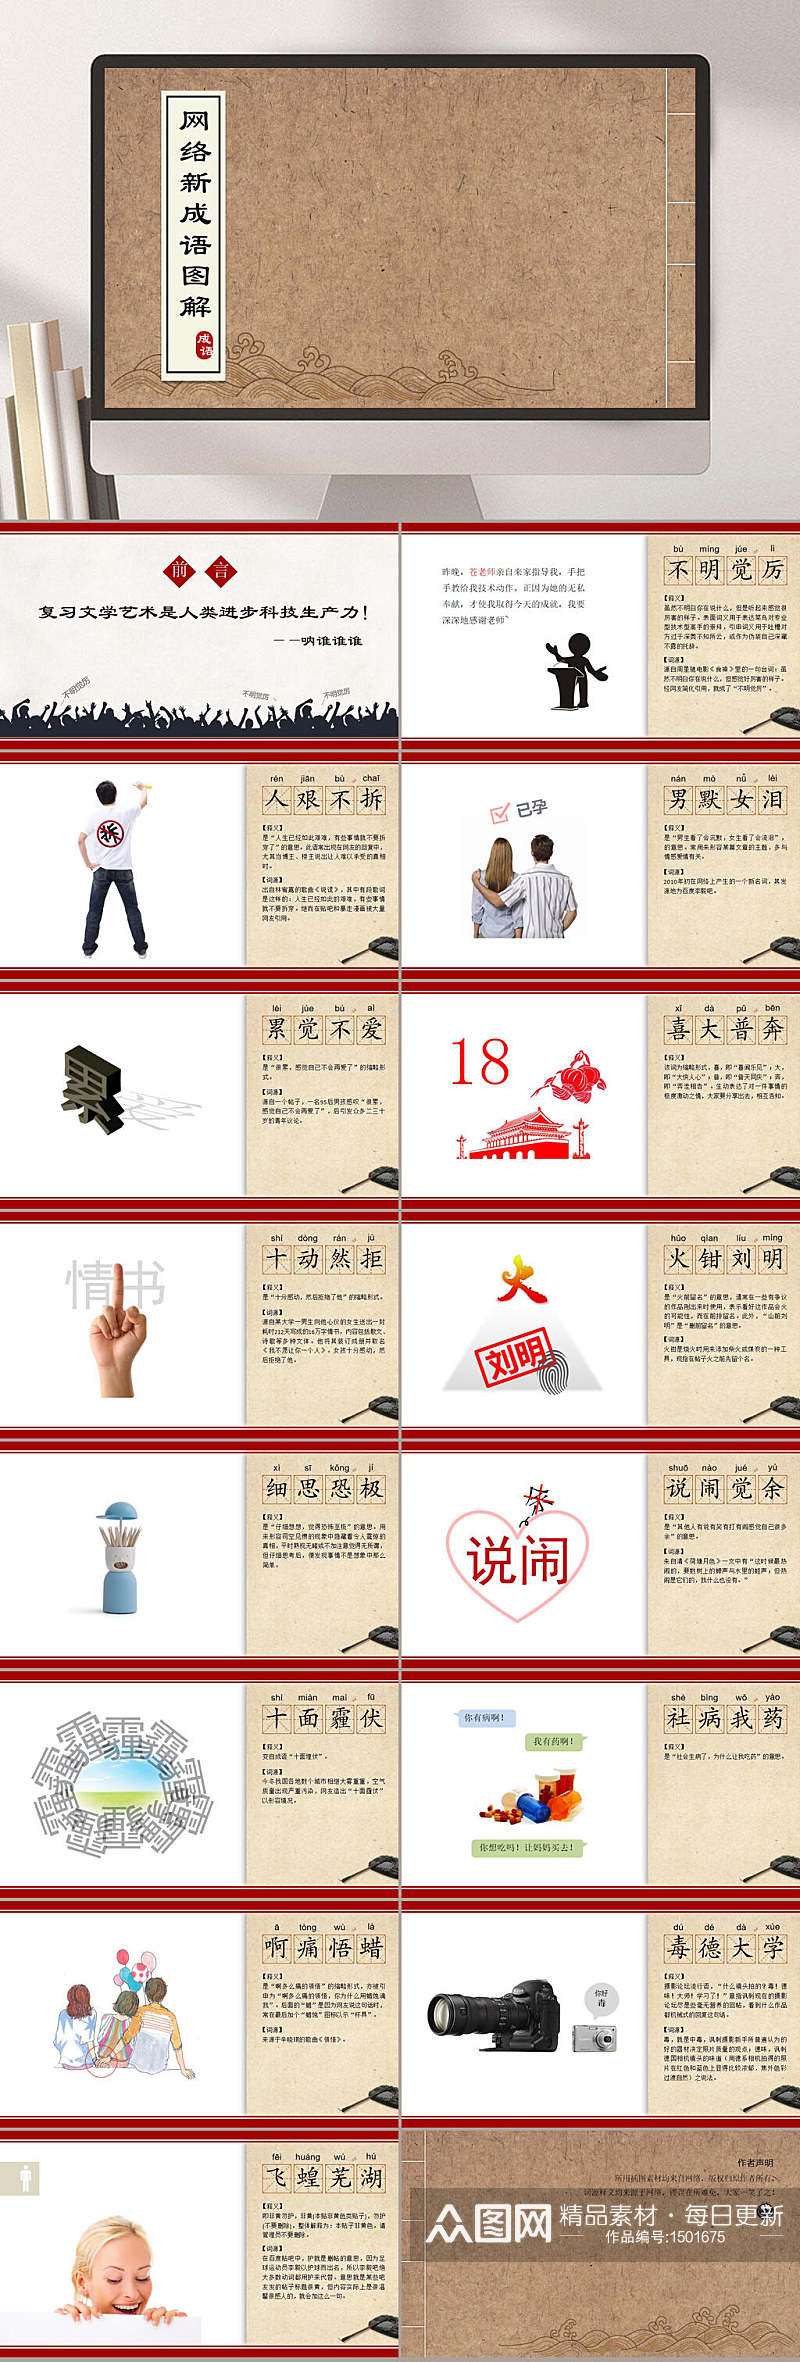 大气中国风中国传统文化PPT模板素材